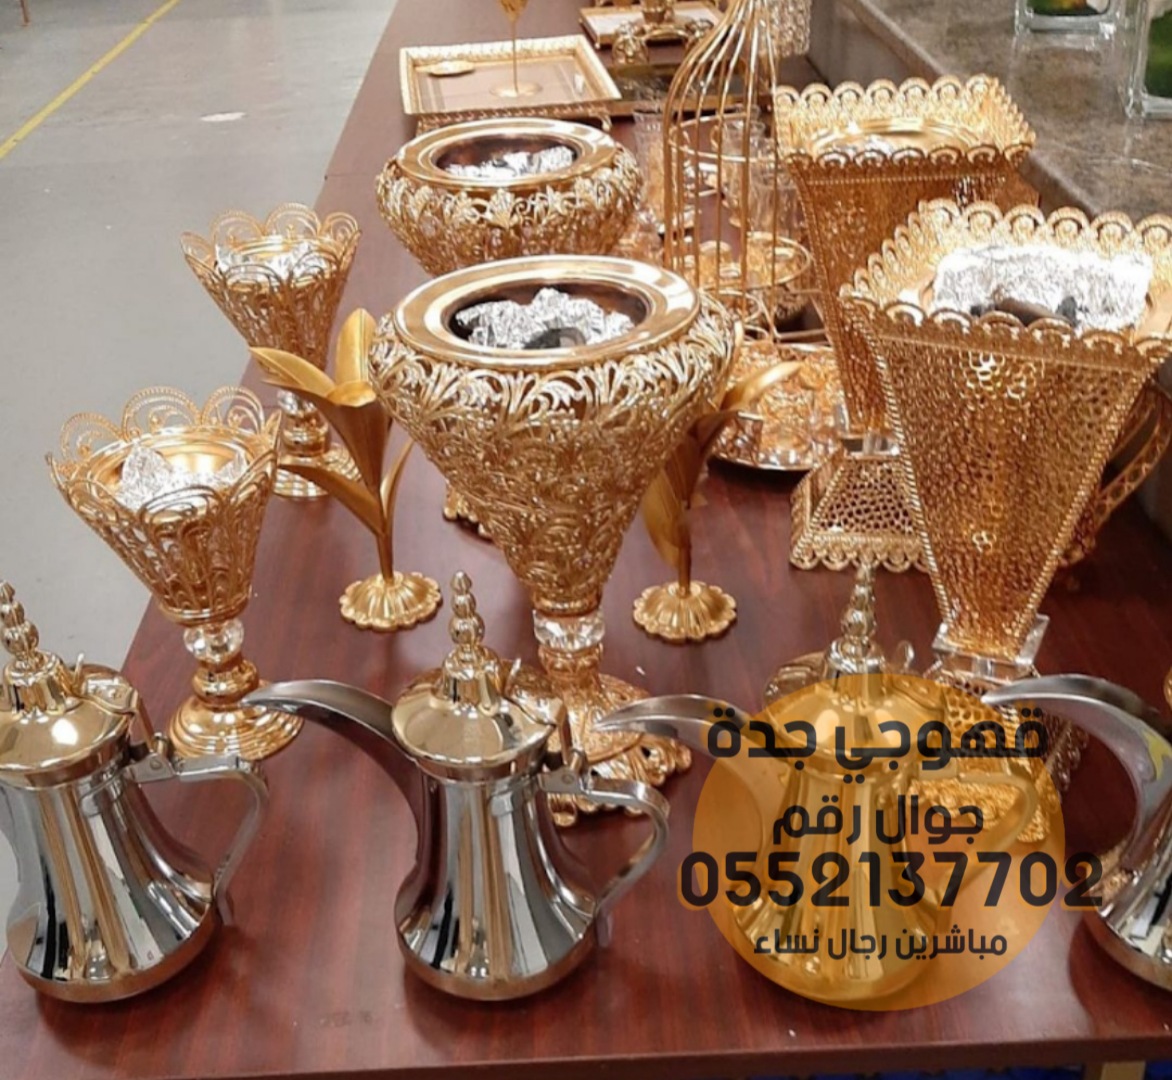 Hospitalité en direct de Qahwaji Sababin à Djeddah 0552137702